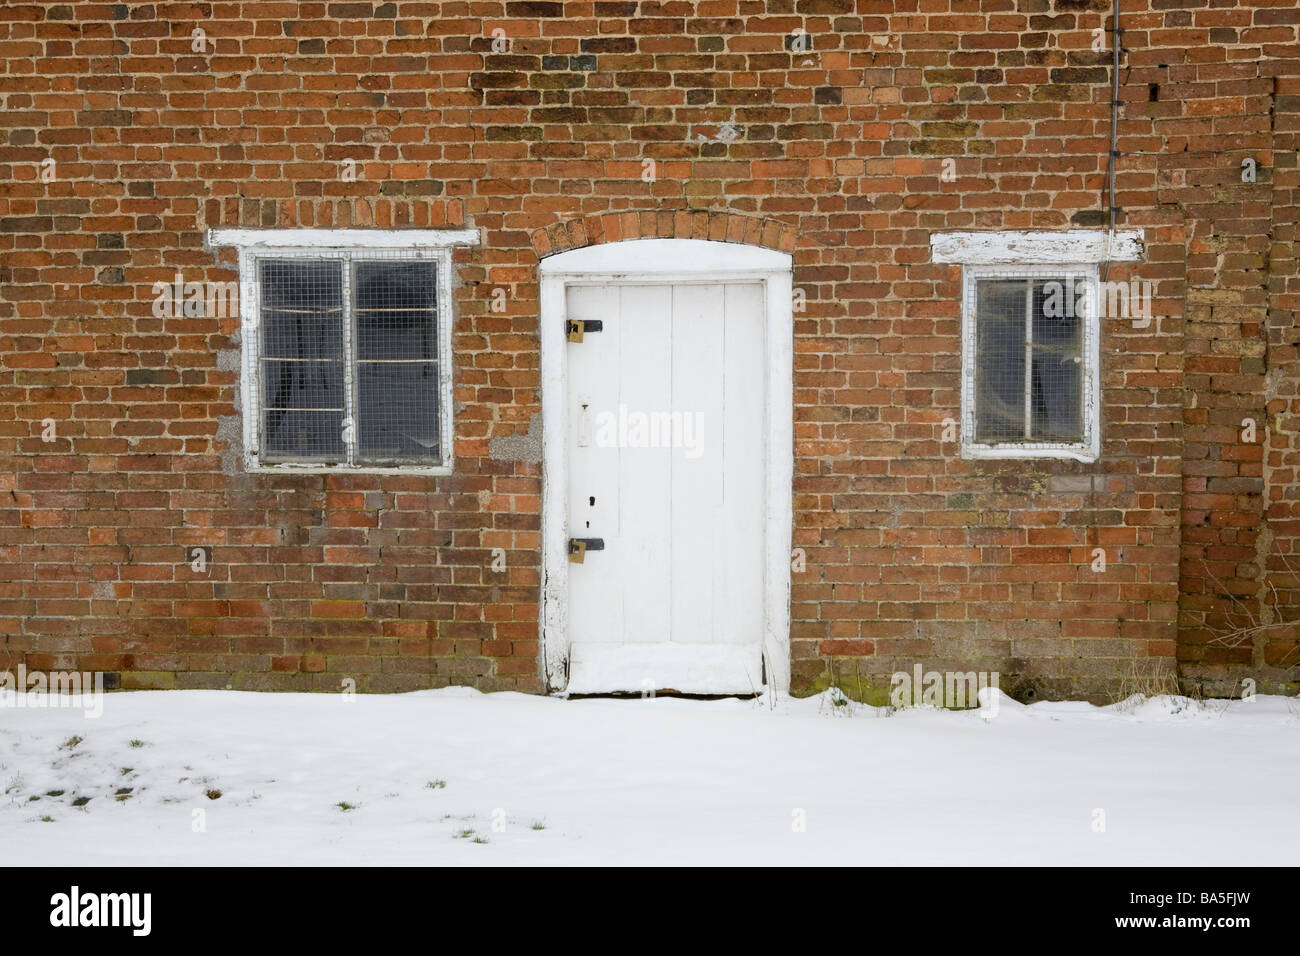 Porte et fenêtres d'une maison construite en brique abandonnés dans la neige Banque D'Images